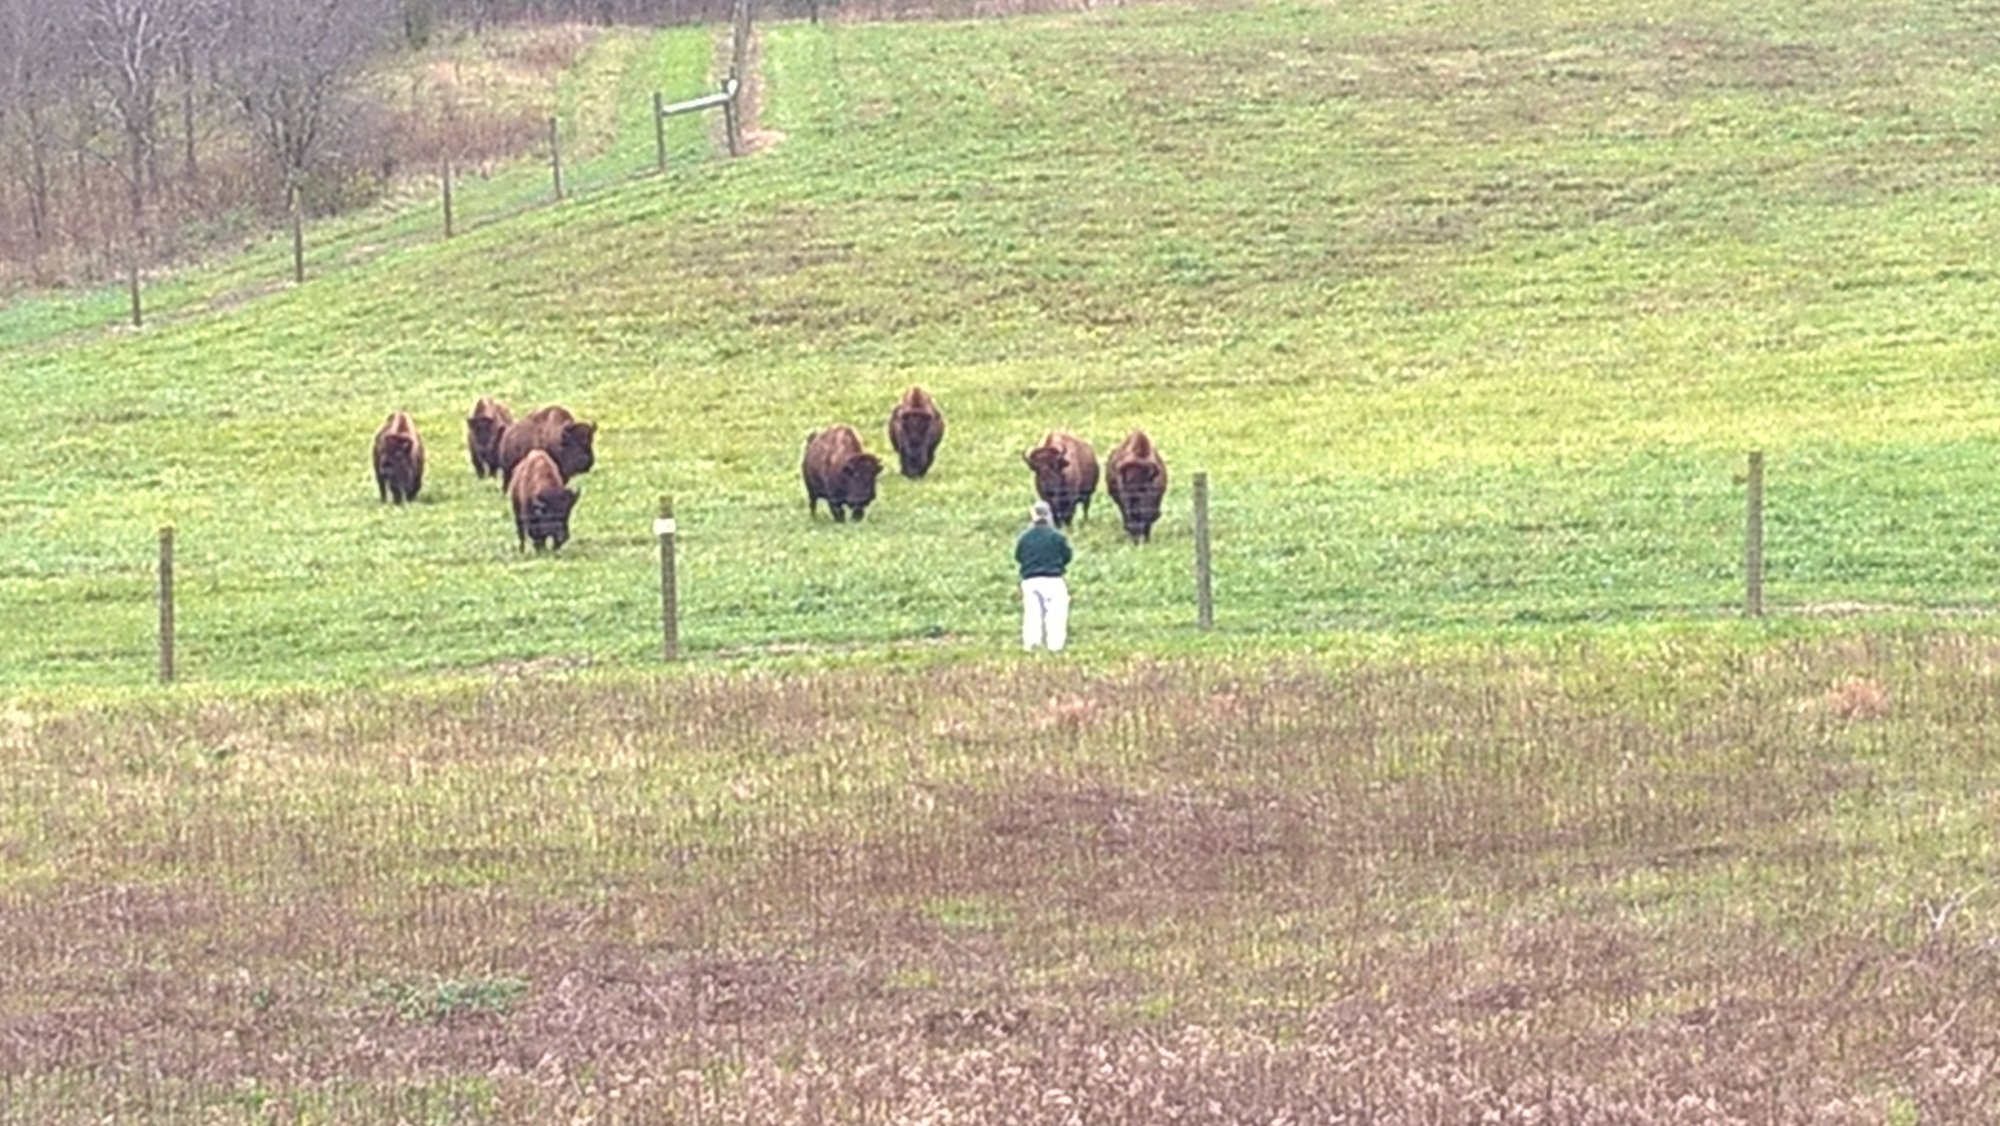 Bison at Battelle Darby park.jpg